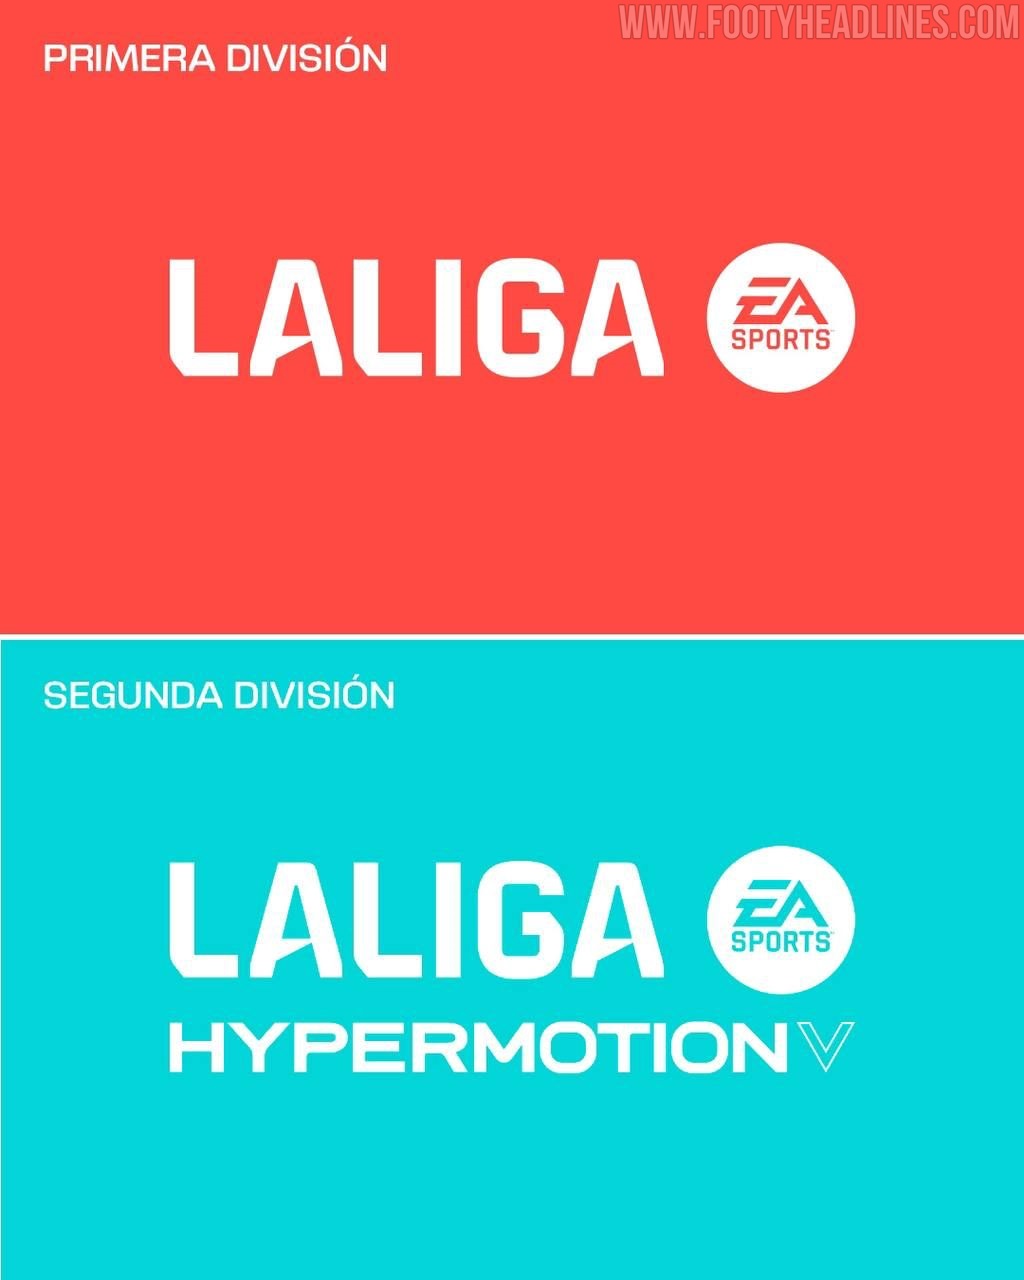 Völlig neues Logo und Branding La Liga wird La Liga EA Sports